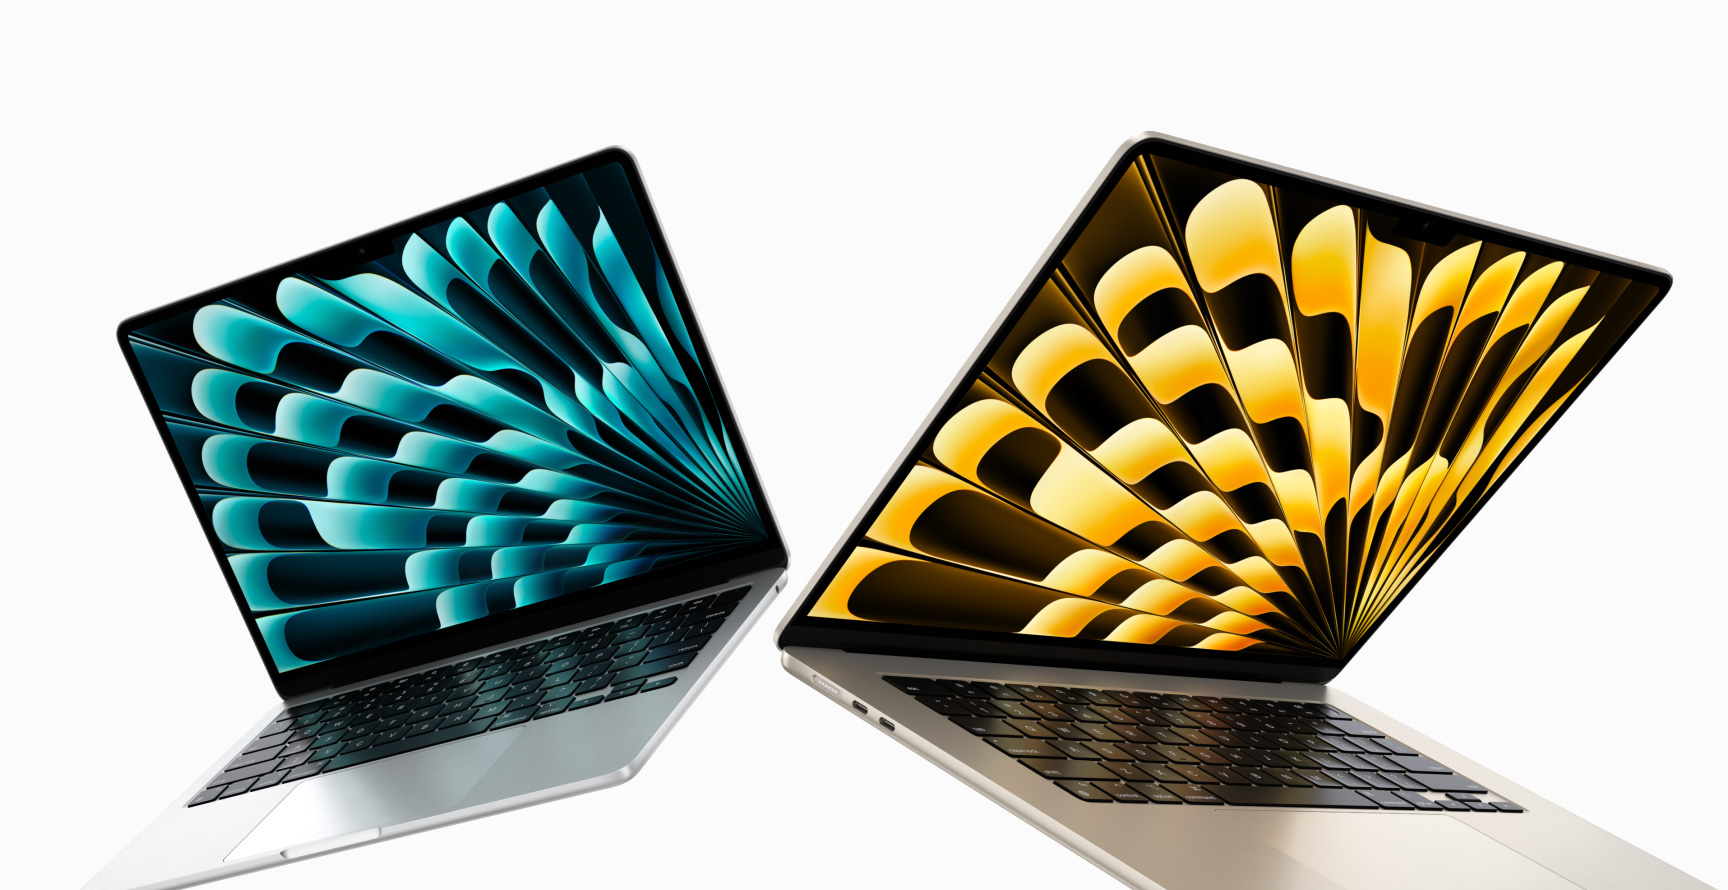 Gümüş ve Yıldız Işığı renklerinde, kısmen açık 13 inç ve 15 inç MacBook Air modellerinin ekran boyutlarındaki farklılıkların gösterildiği önden görünüm.